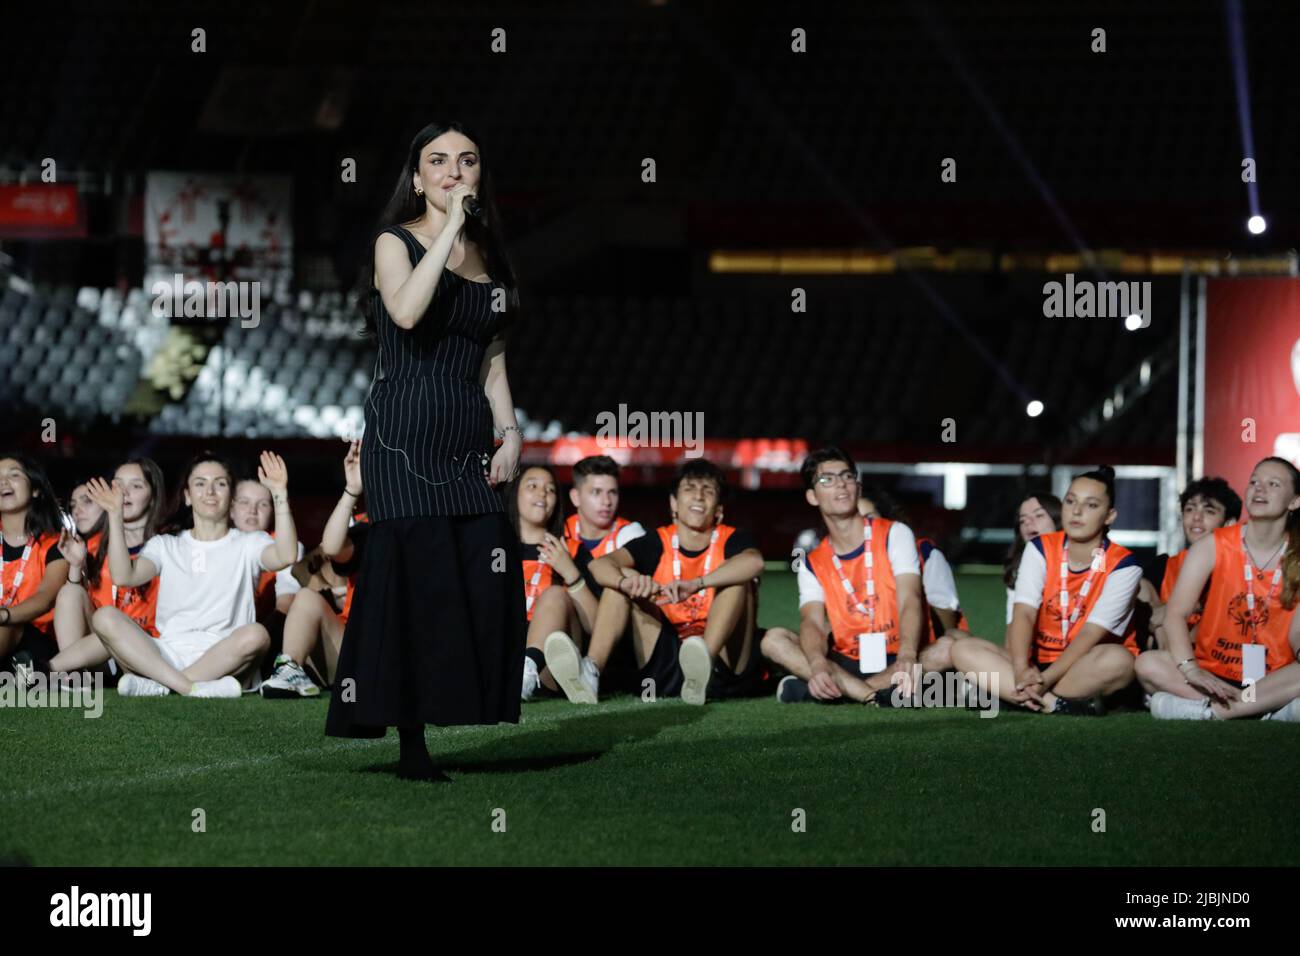 05.. Juni 2022, Turin Italien - Eröffnungszeremonie der 37. Special Olympics italienischen Sommerspiele. Die Sängerin arisa hat eine Show auf dem Feld. Stockfoto